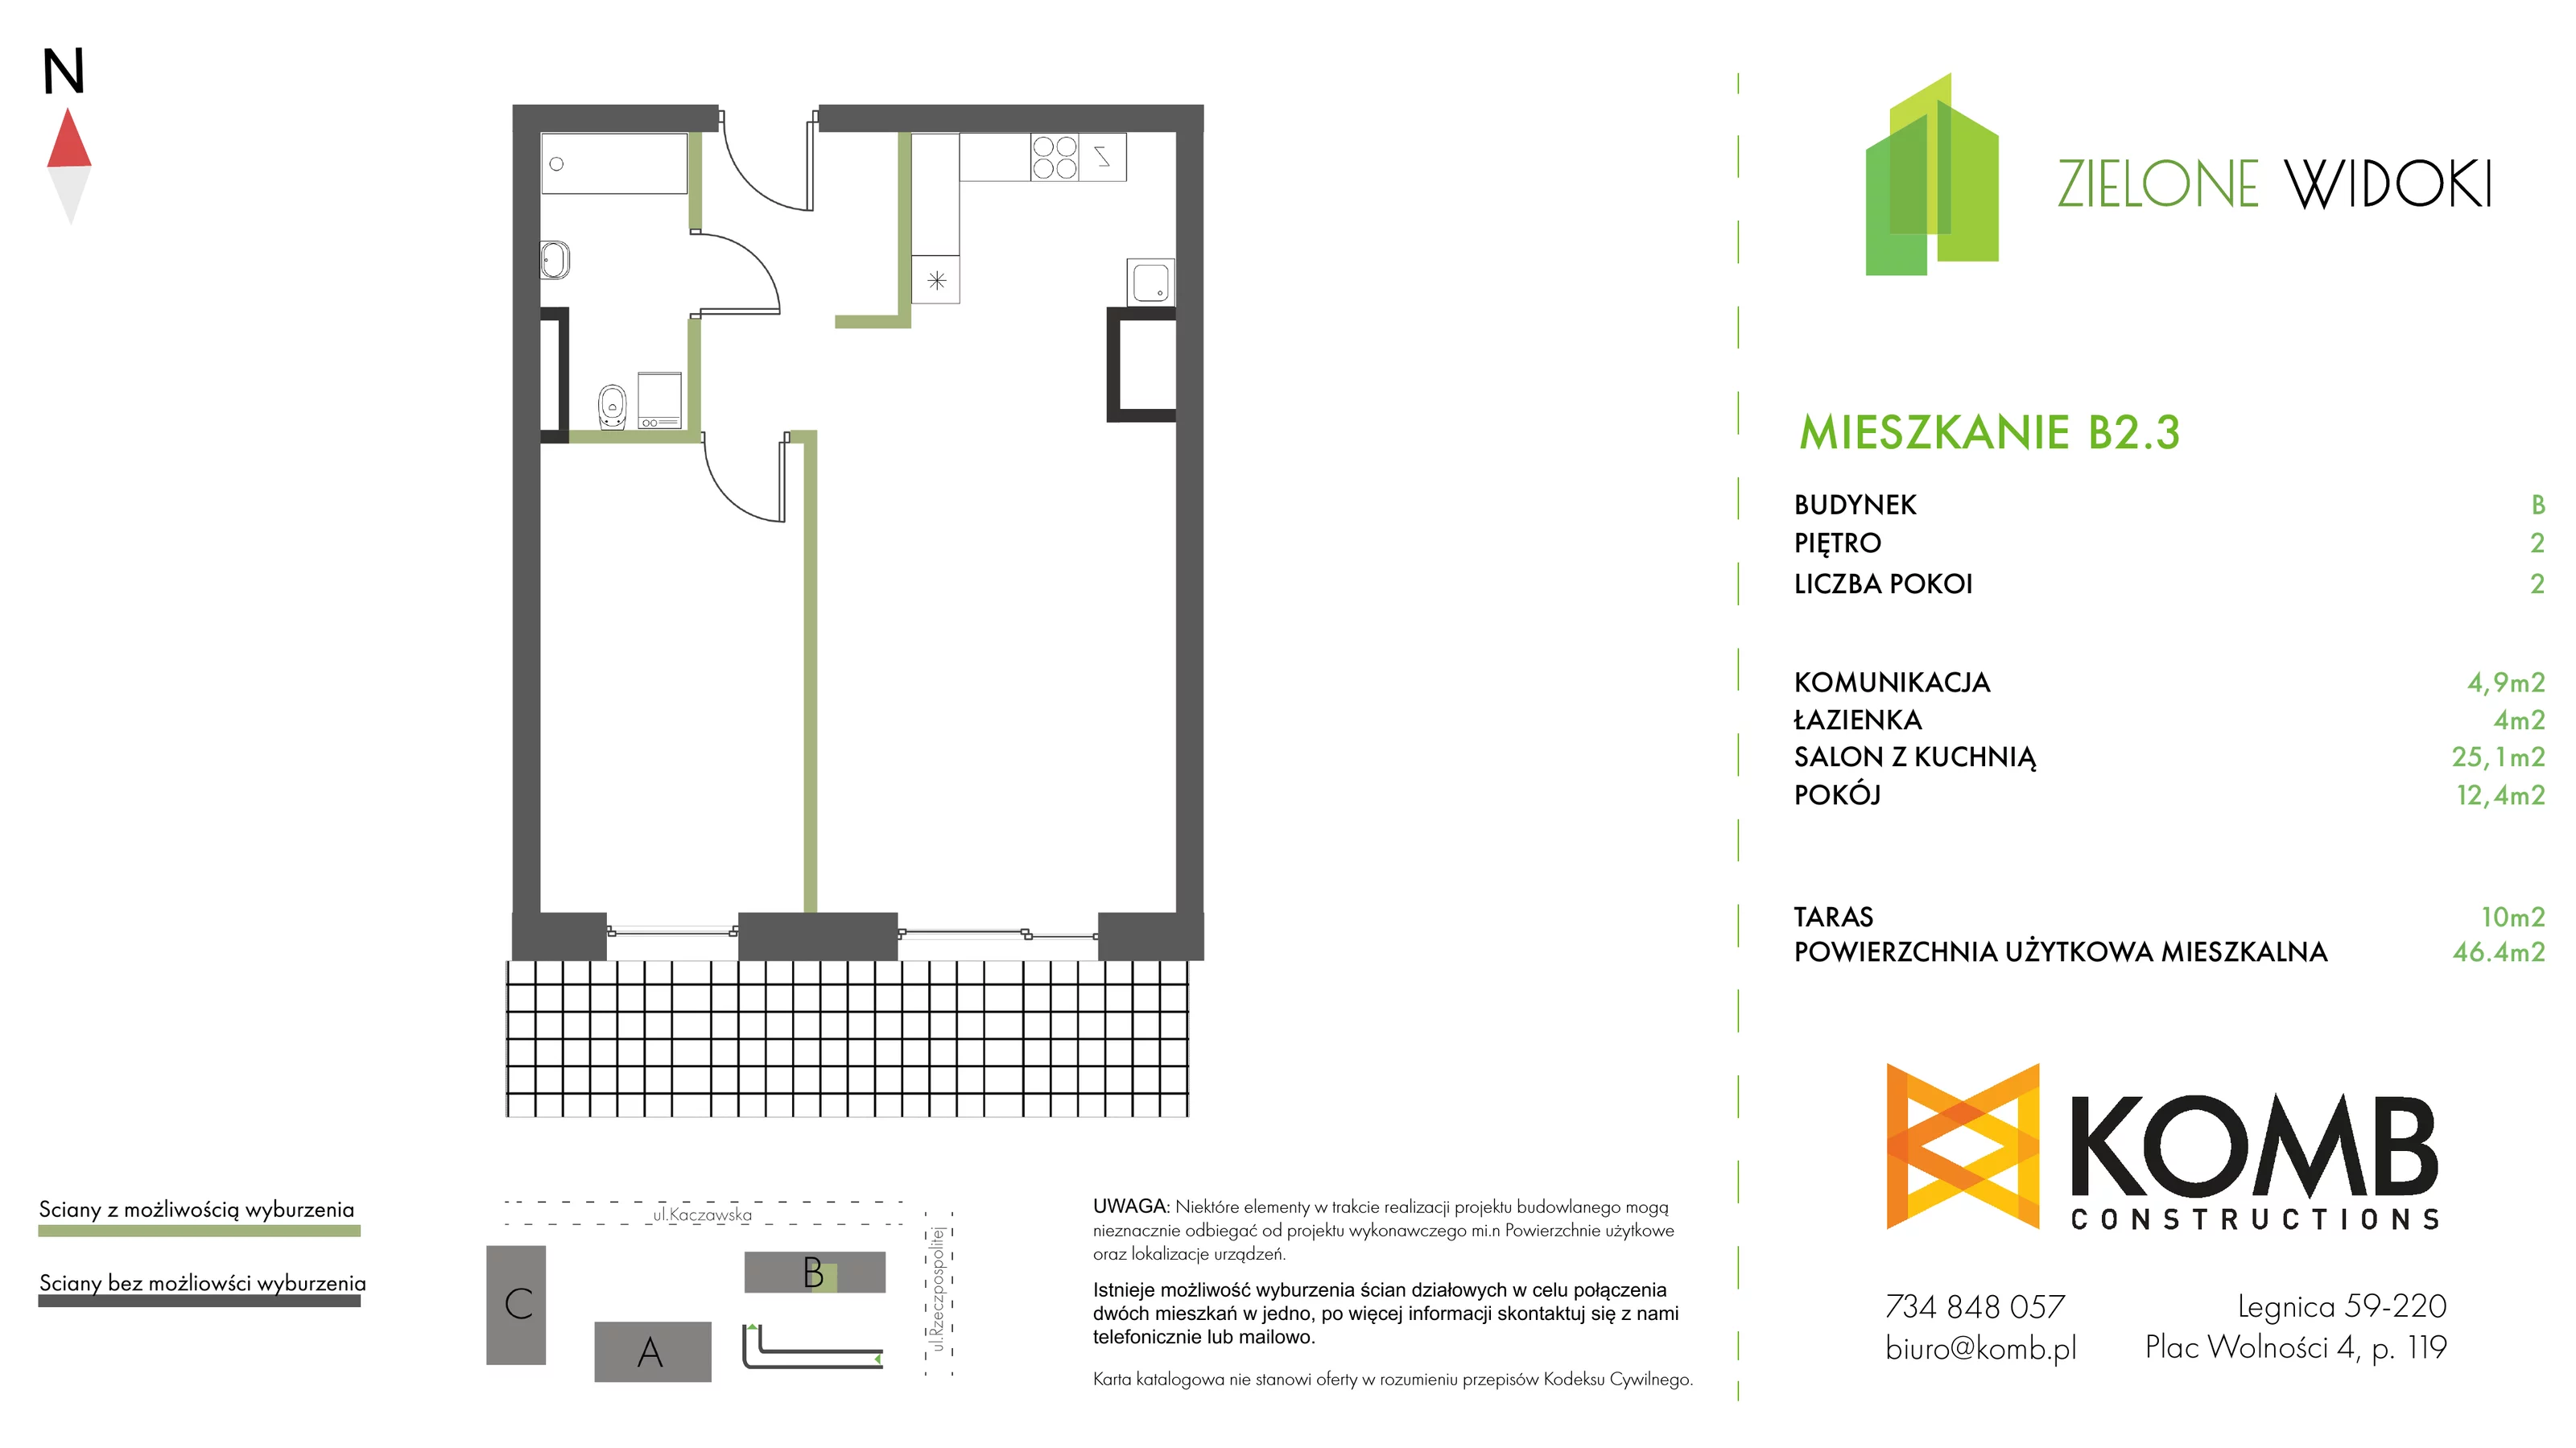 Mieszkanie 46,40 m², piętro 2, oferta nr B2.3, Zielone Widoki, Legnica, Bielany, al. Rzeczypospolitej 23